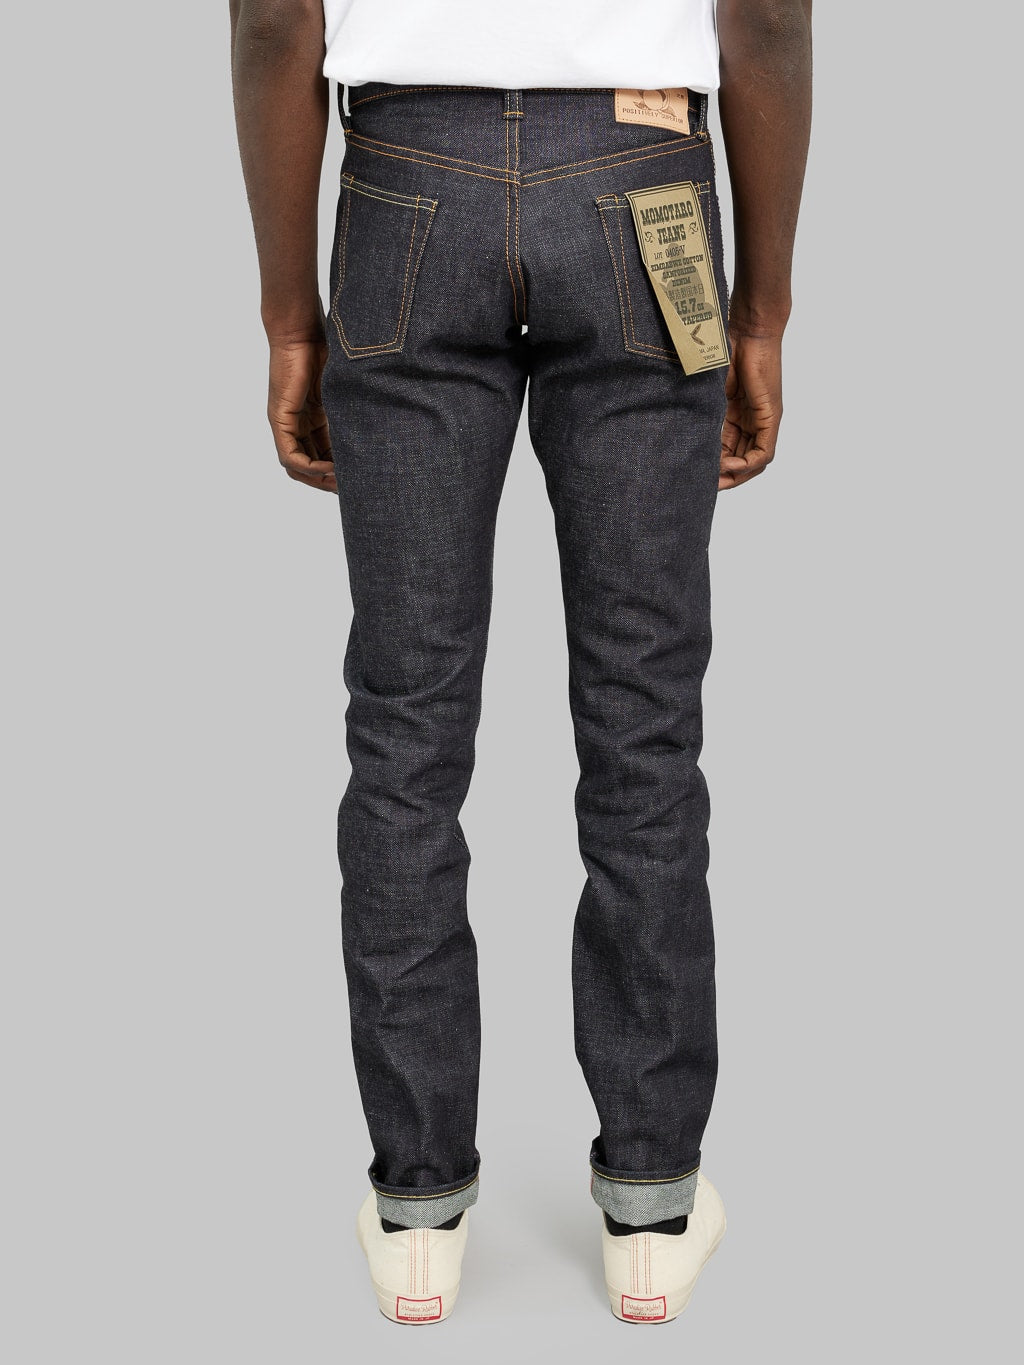 momotaro jeans 0405 v selvedge denim high tapered back fit